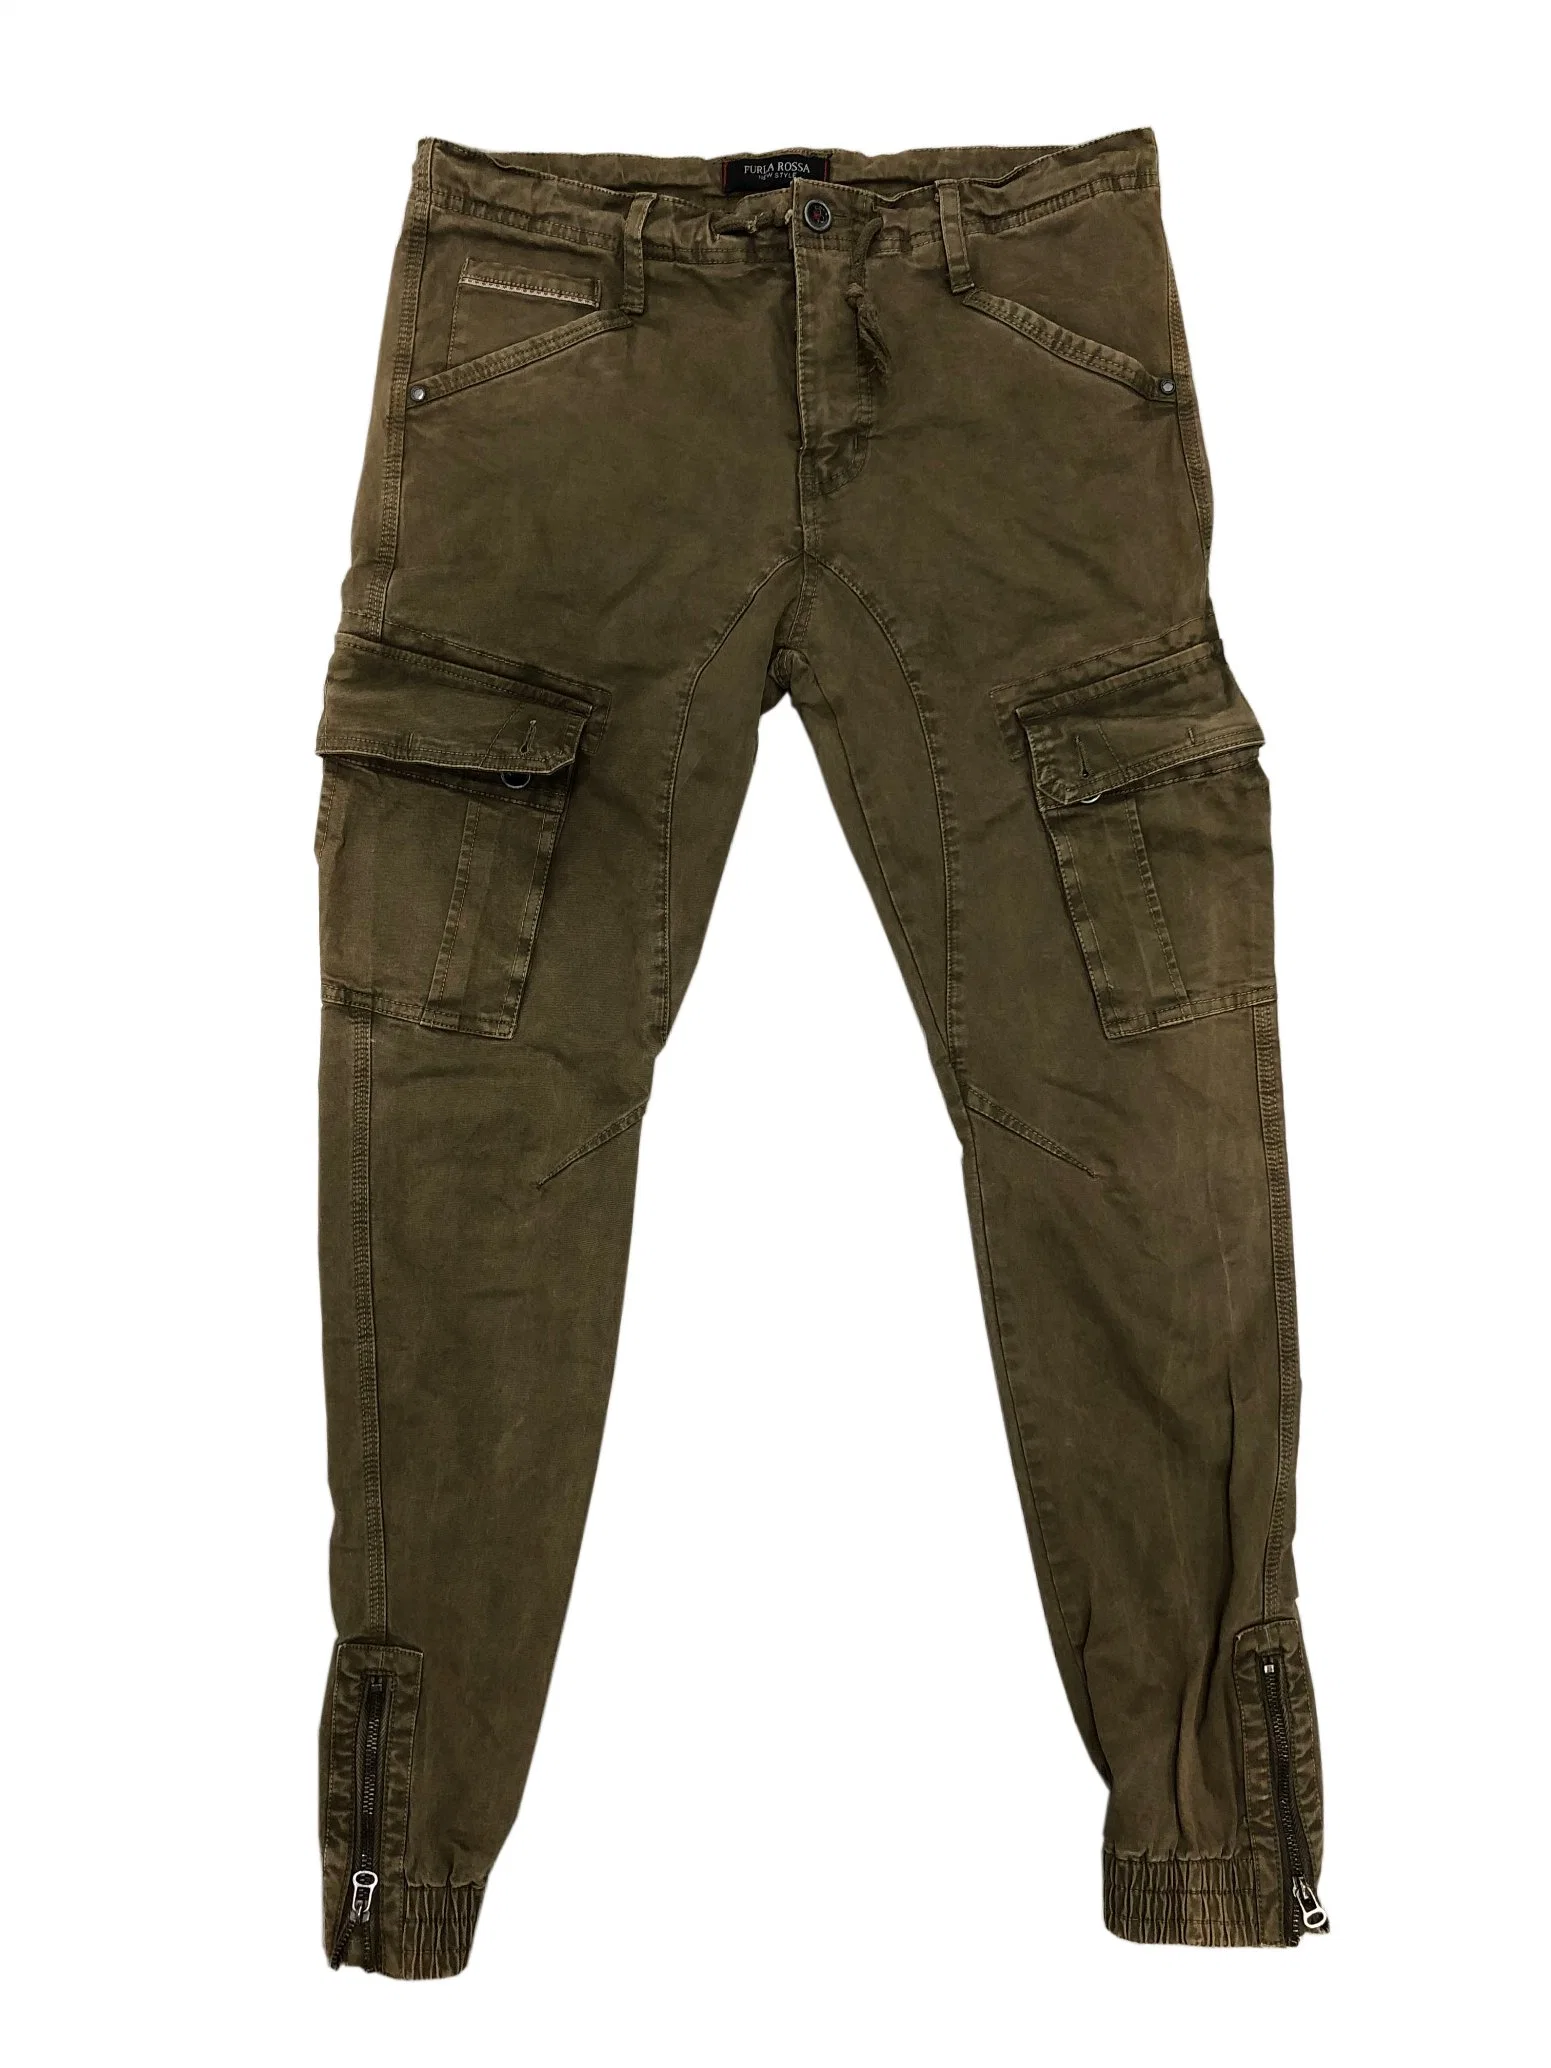 Pantalon cargo en sergé de coton confortable Goodthreads pour homme, coupe slim avec bas élastique et lavage vintage